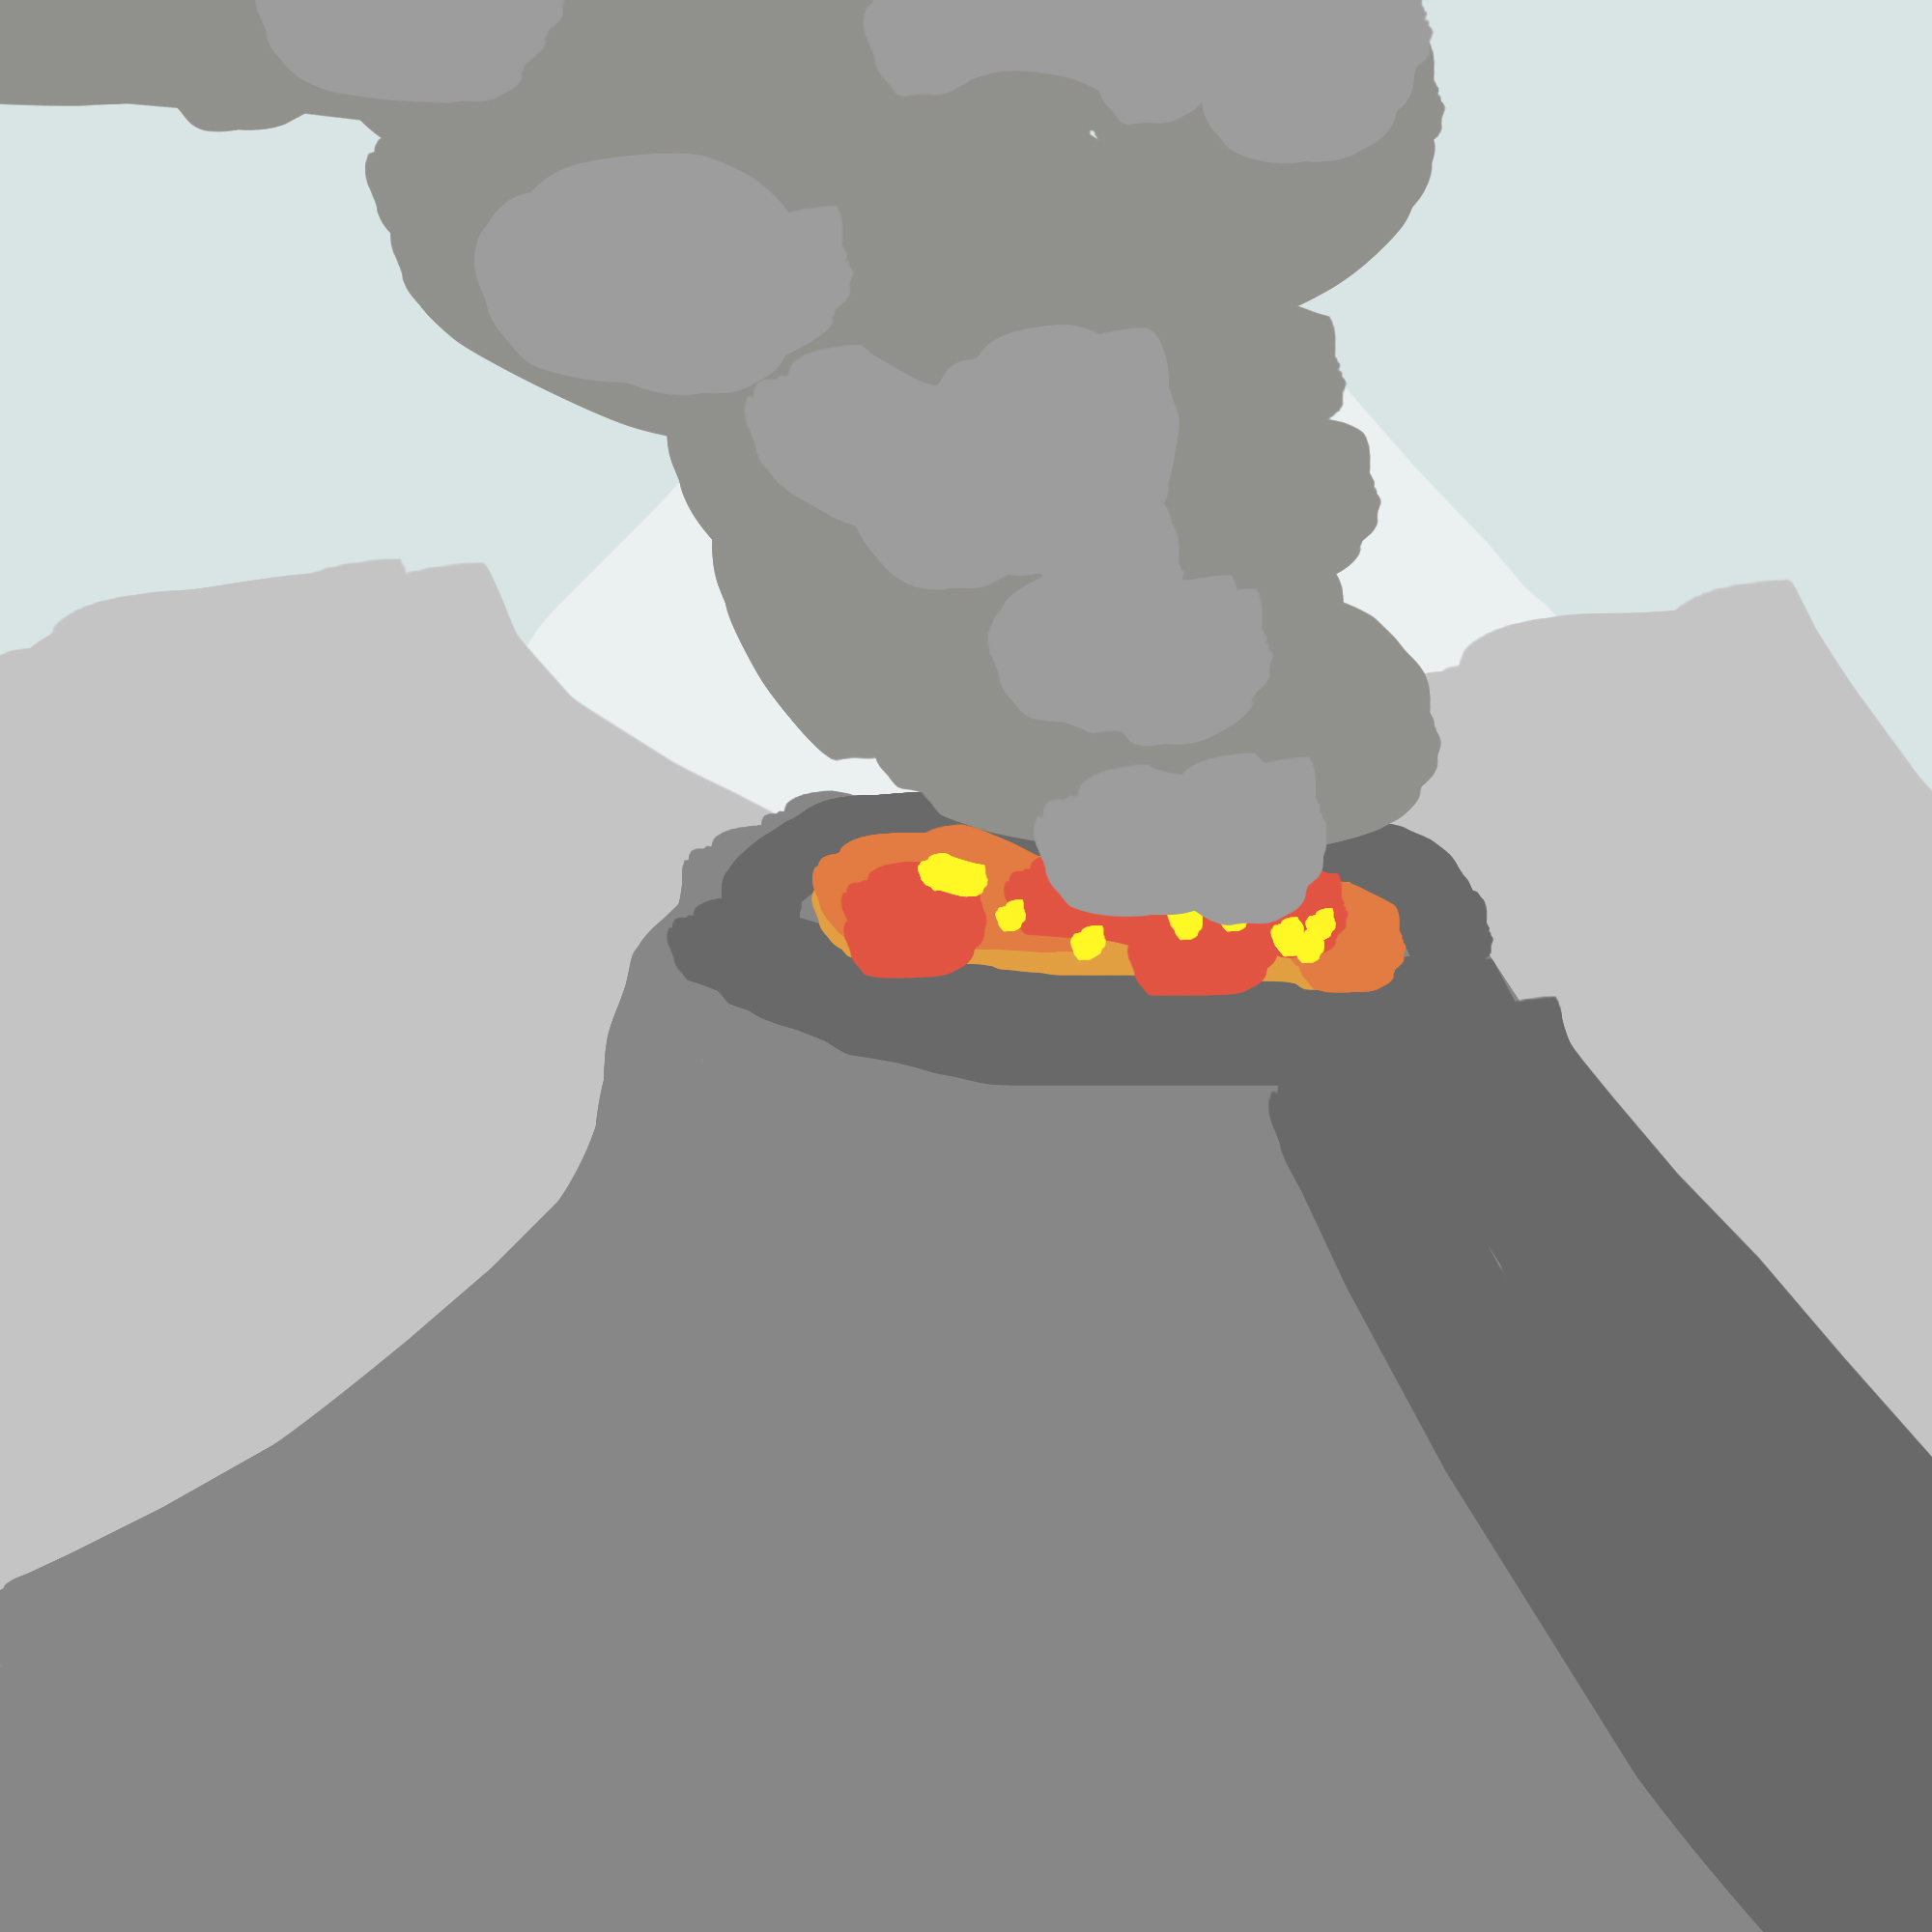 Une chaîne de volcans immenses. De la lave rougoie dans le cratère de l'un d'eux, laissant échapper une colonne de fumée montant jusqu'au ciel.